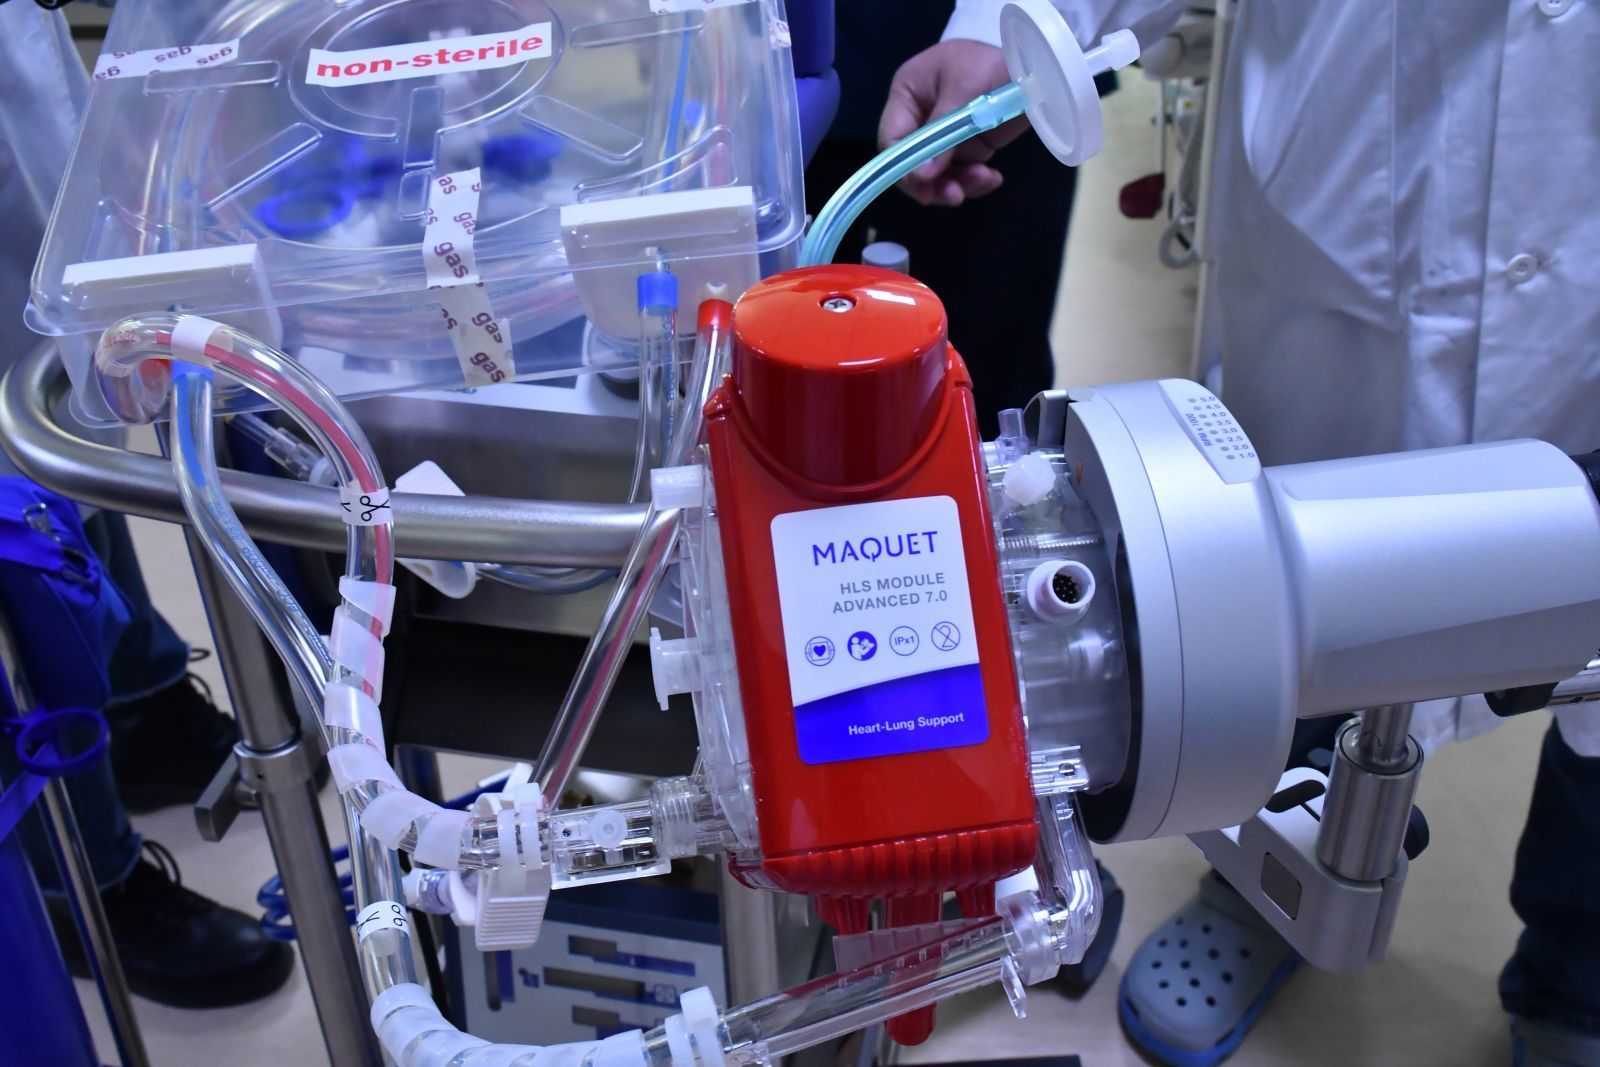 УГТЭ: Гуравдугаар эмнэлэг коронавирусийн эмчилгээнд ECMO аппарат ашиглана